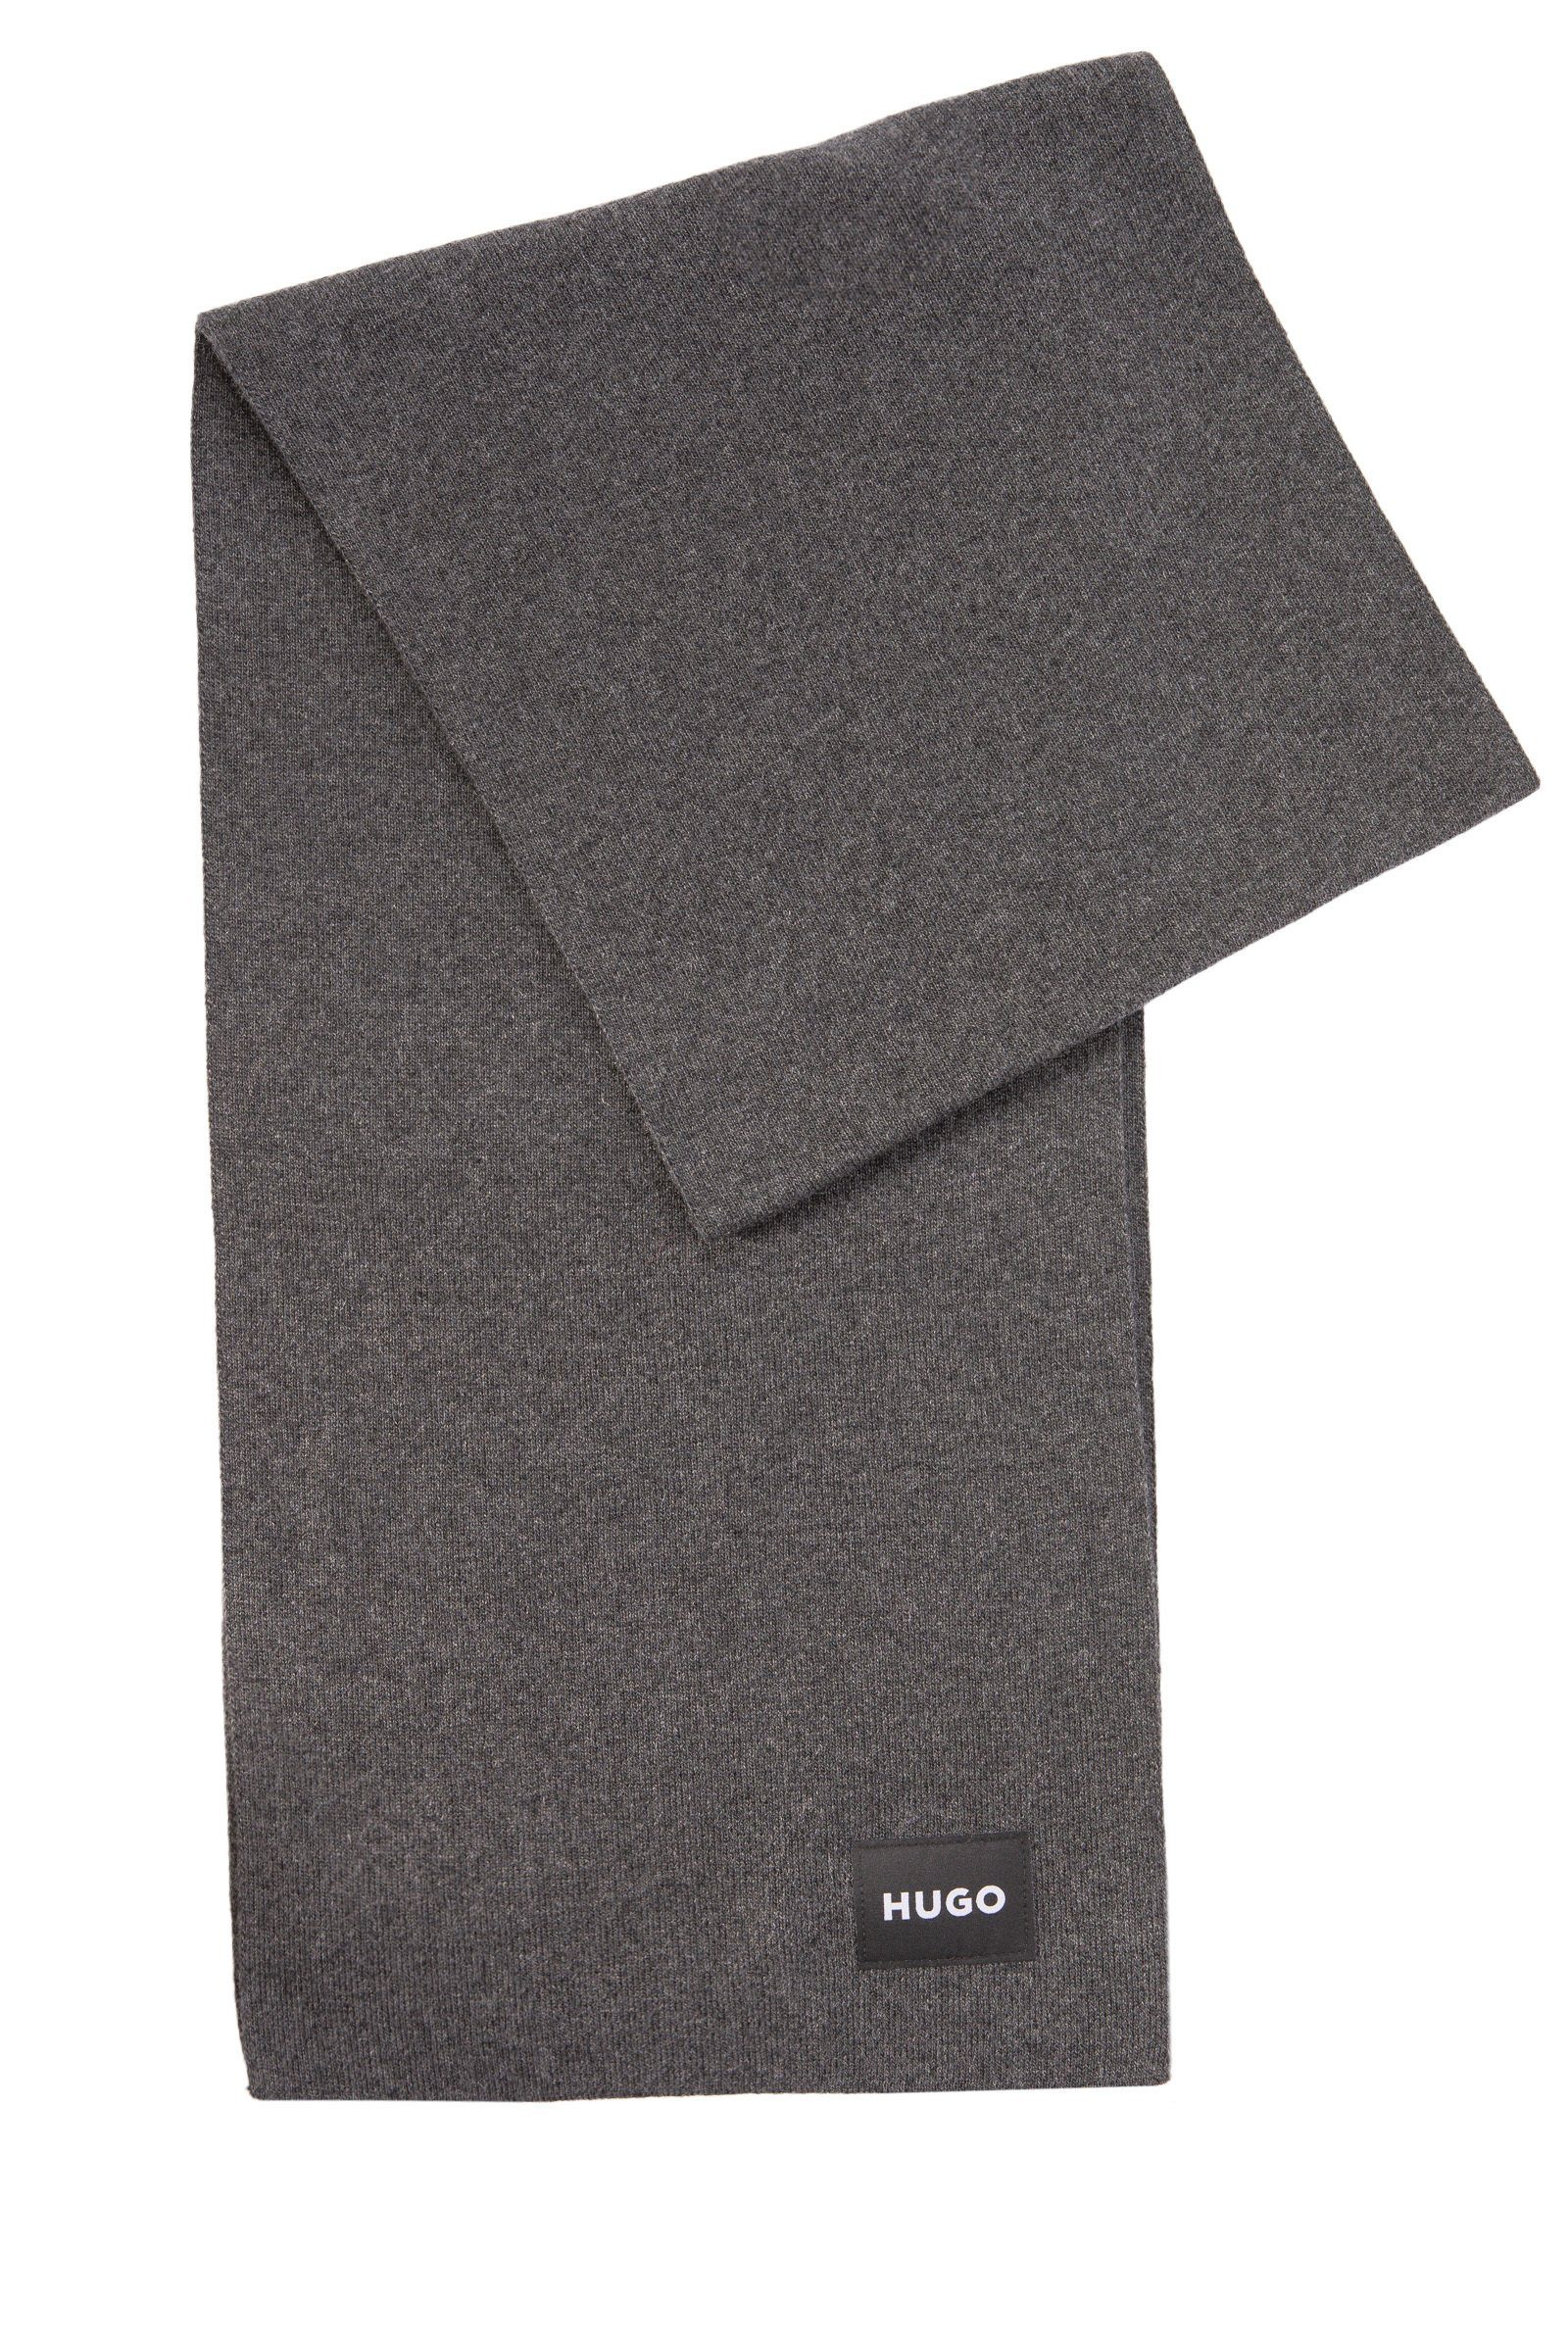 HUGO Schal Zevon, (keine Angabe, keine Angabe) Grau (023) | Modeschals